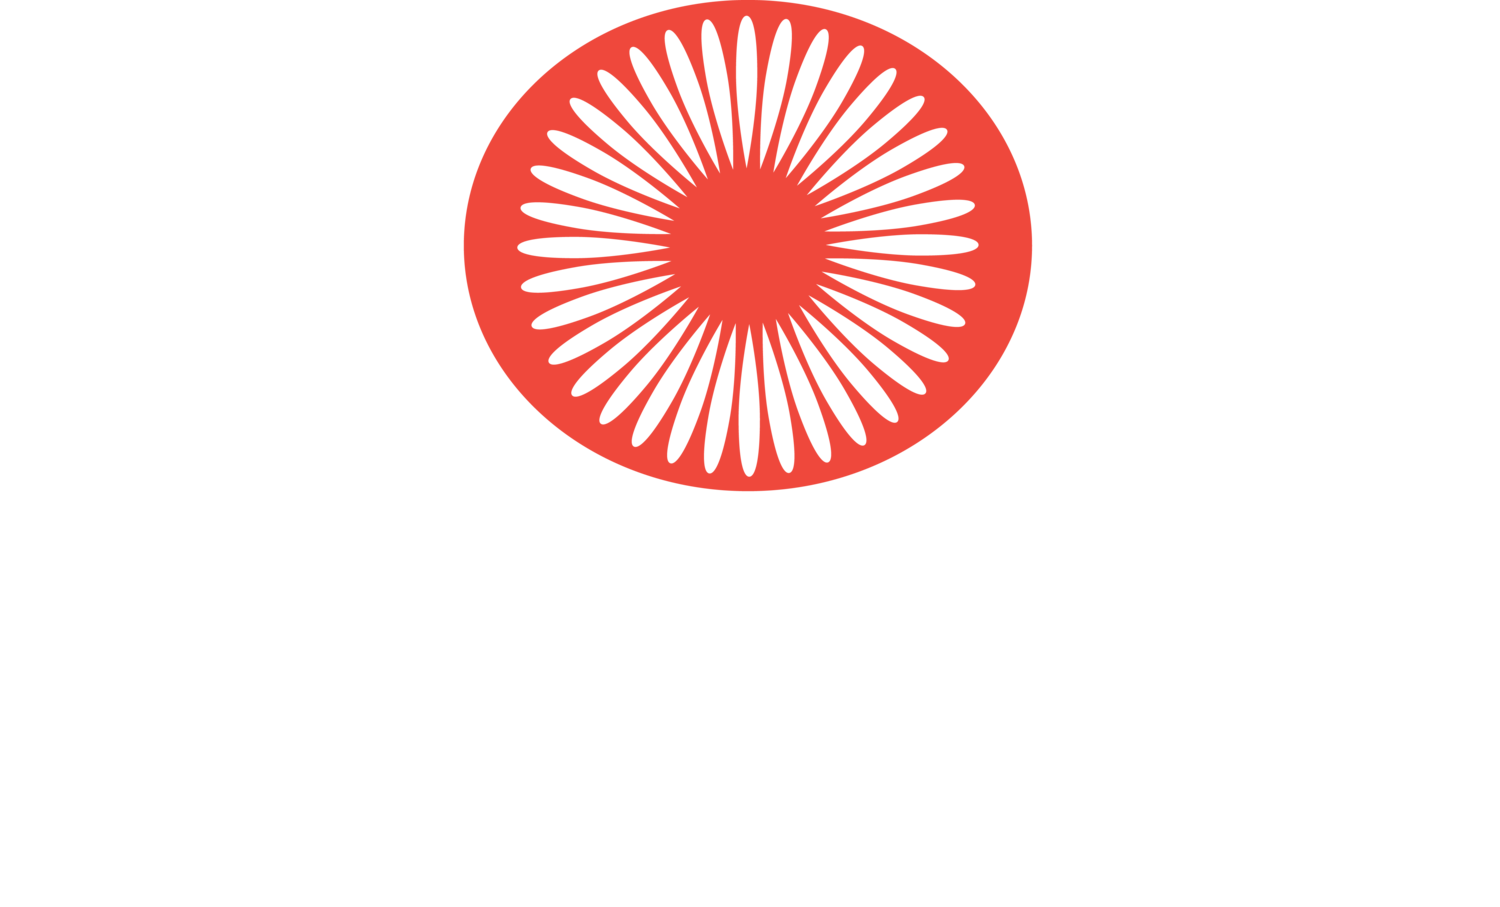 Wai'alae School Foundation